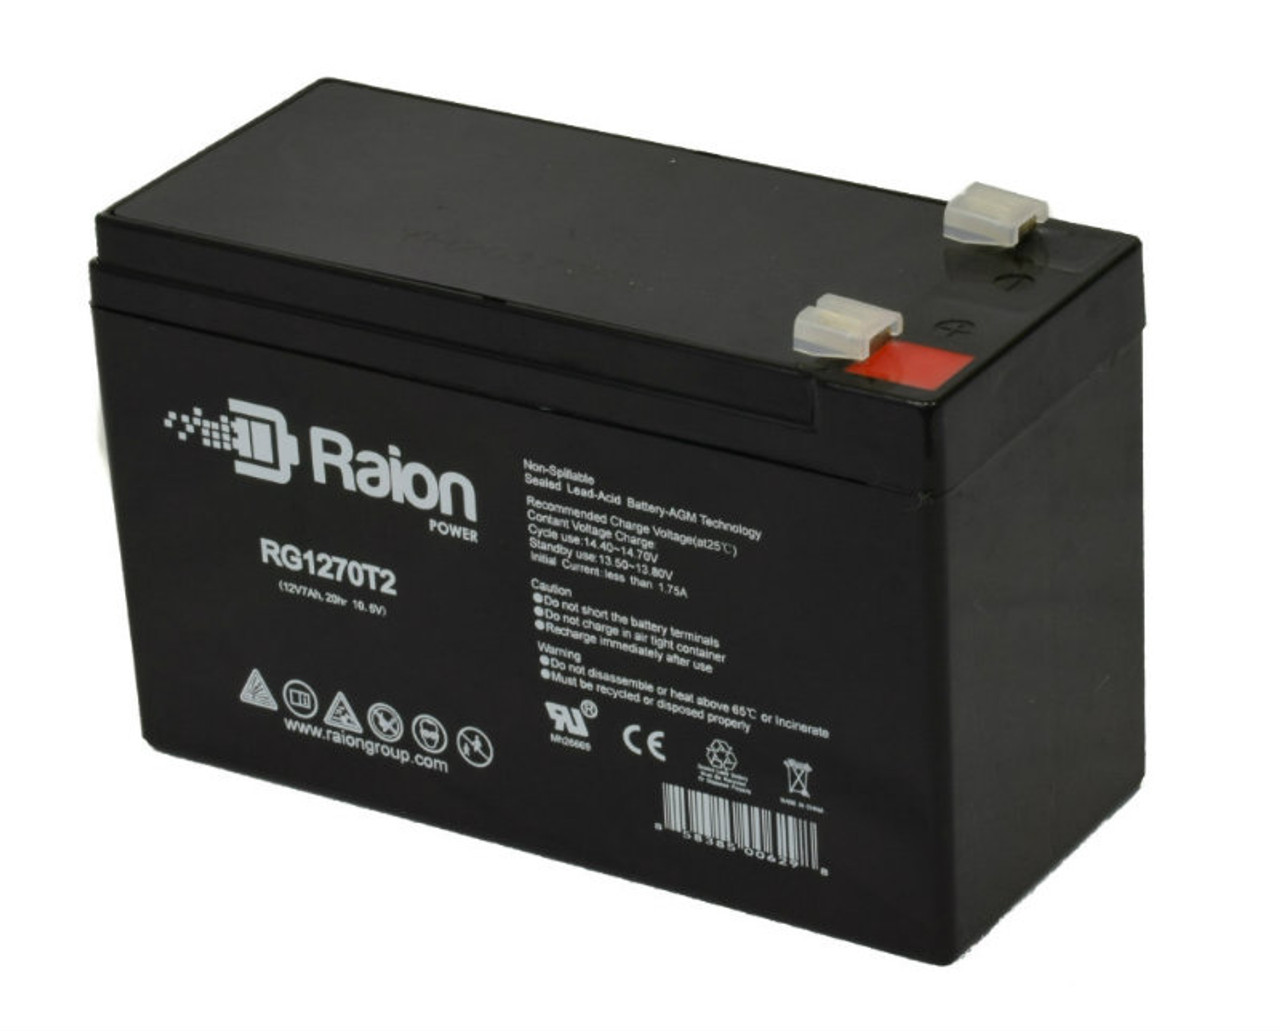 Raion Power RG1270T2 12V 7Ah Rechargeable Battery for Vasworld Power GB12-6.5